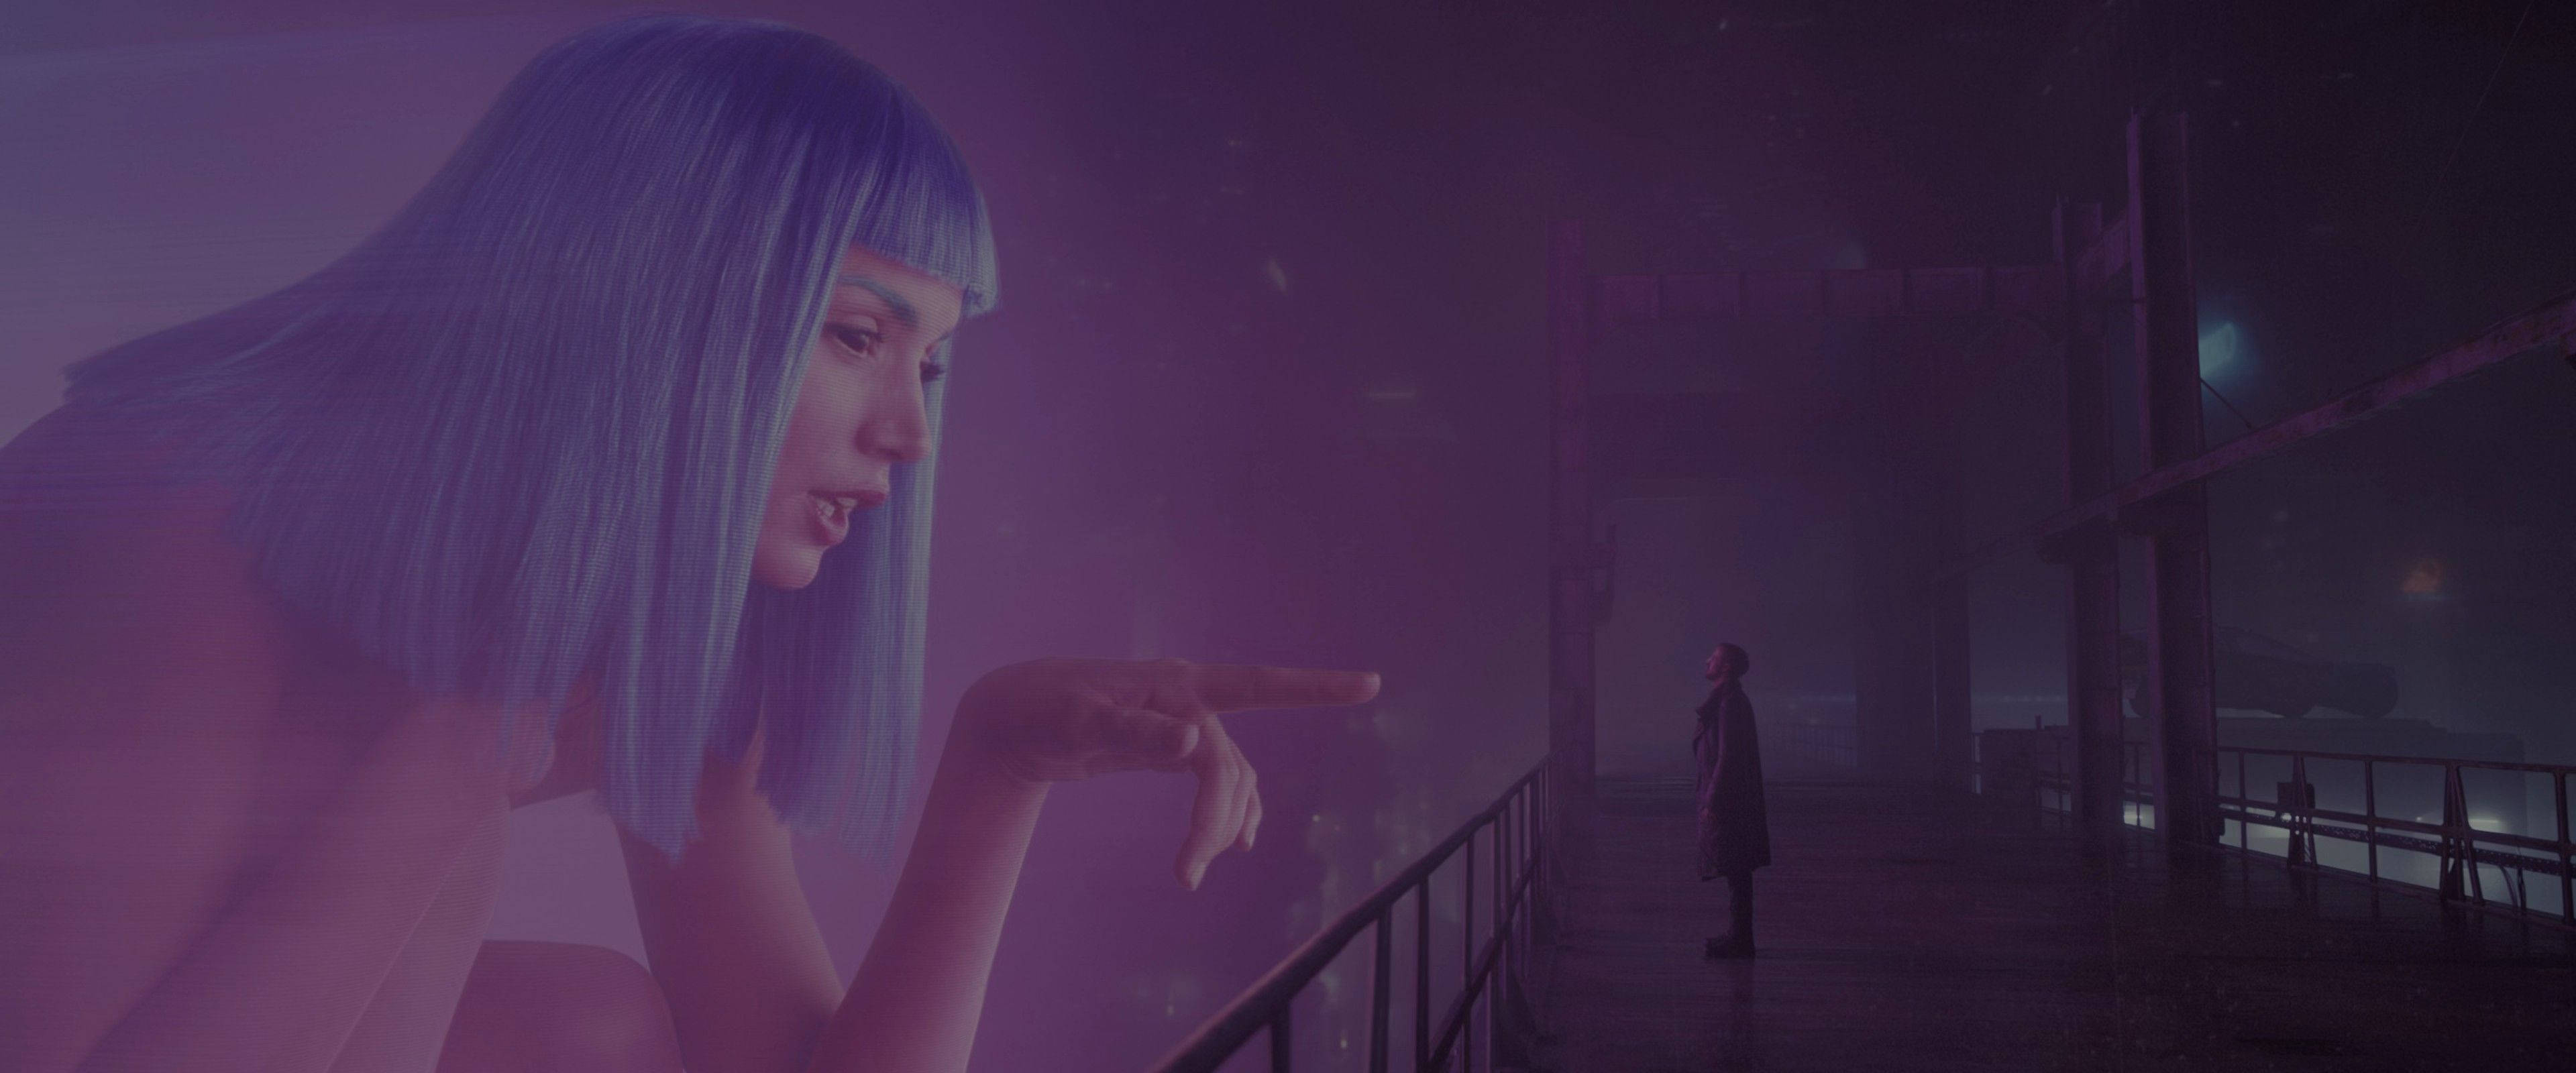 Download Joi a hologram from Blade Runner 2049 Wallpaper  Wallpaperscom